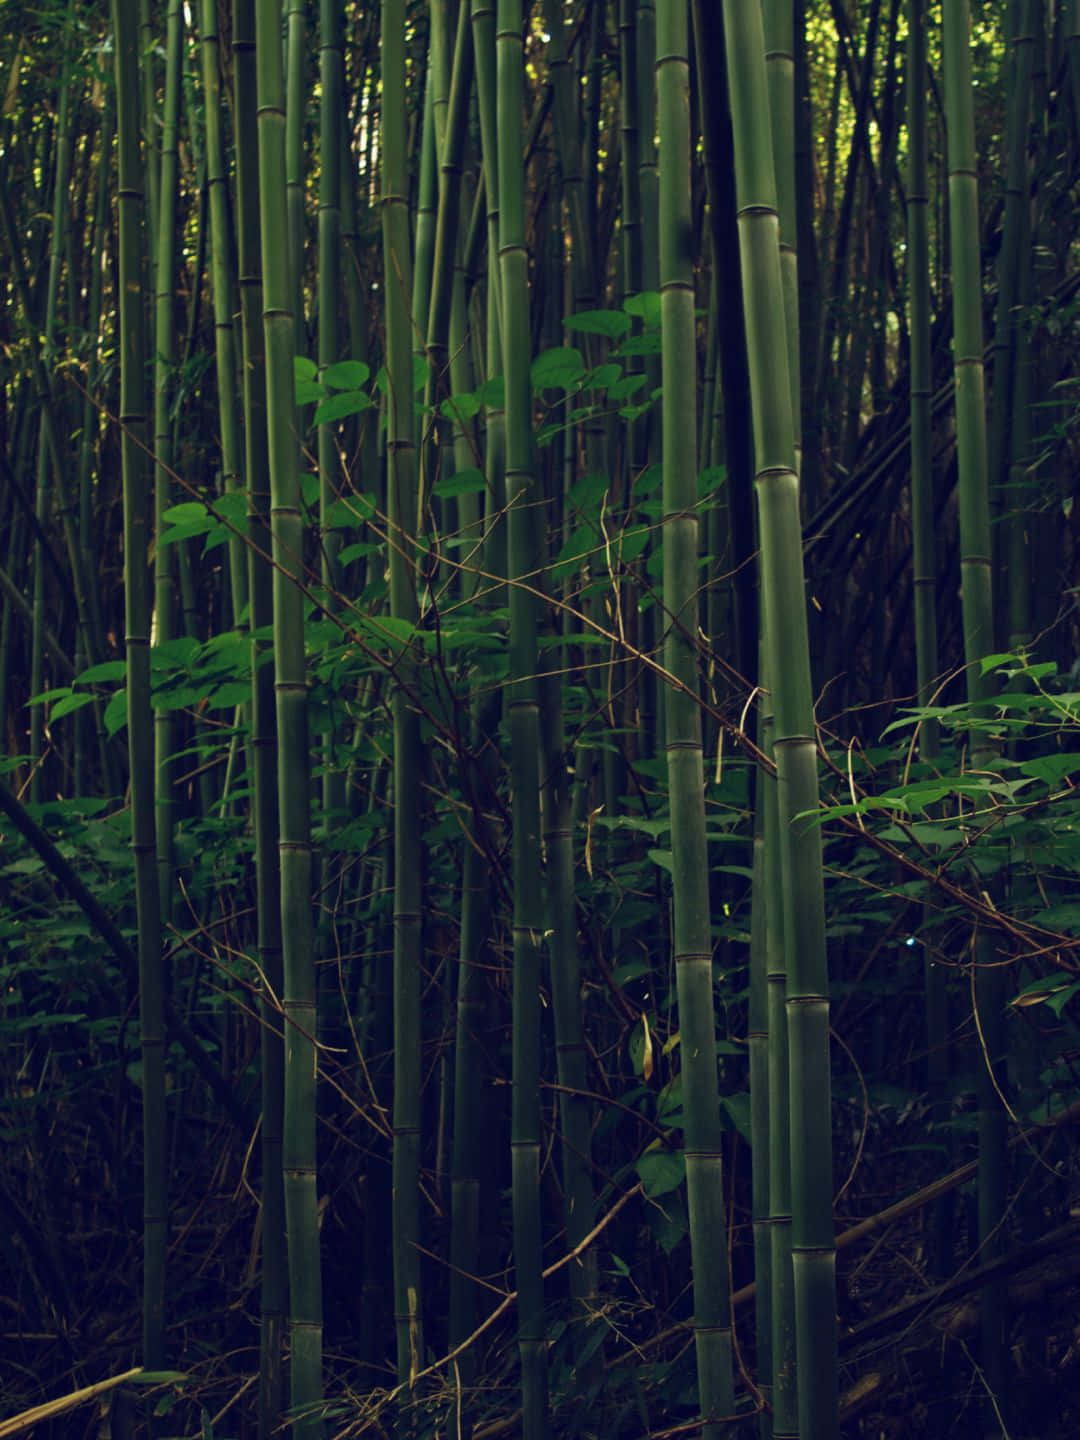 Fondode Pantalla De Bambú En 1440p, Árboles De Bambú En Un Entorno Oscuro.